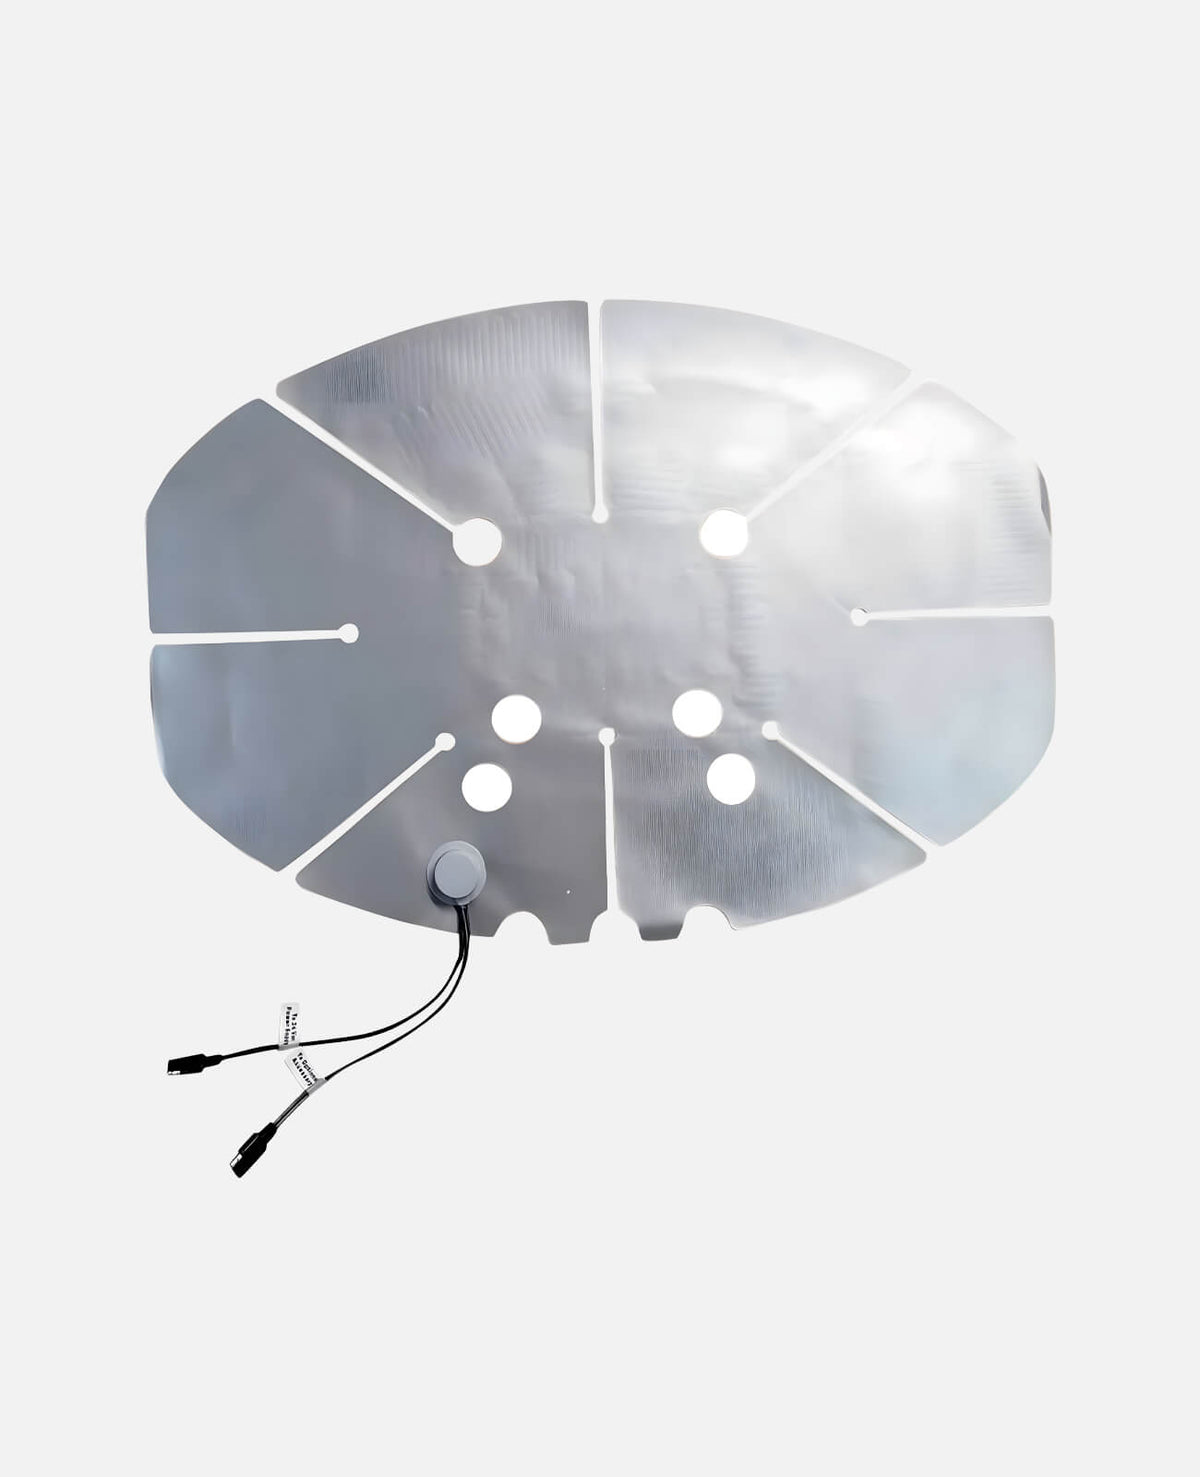 Perfect Vision HotShot 28”x20” Satellite Dish Heating Element Sticker (PVHSSL)